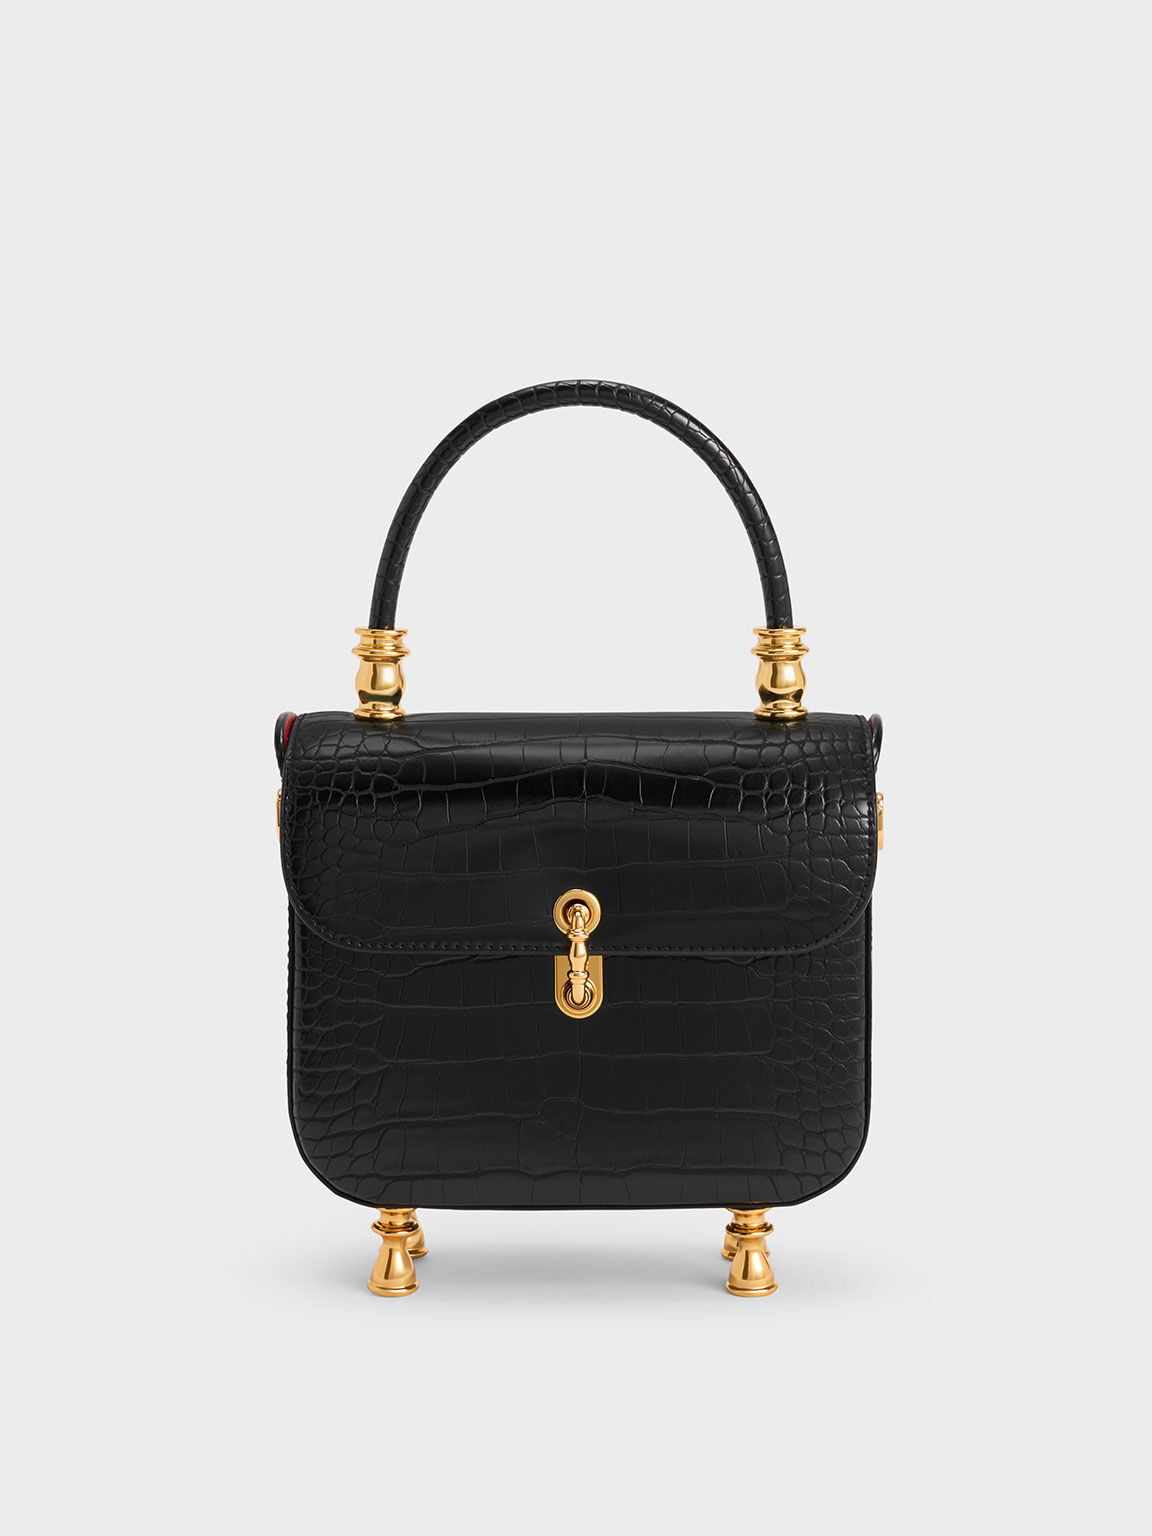 Charles & Keith - Women's Meriah Croc-Embossed Top Handle Bag, Black, S